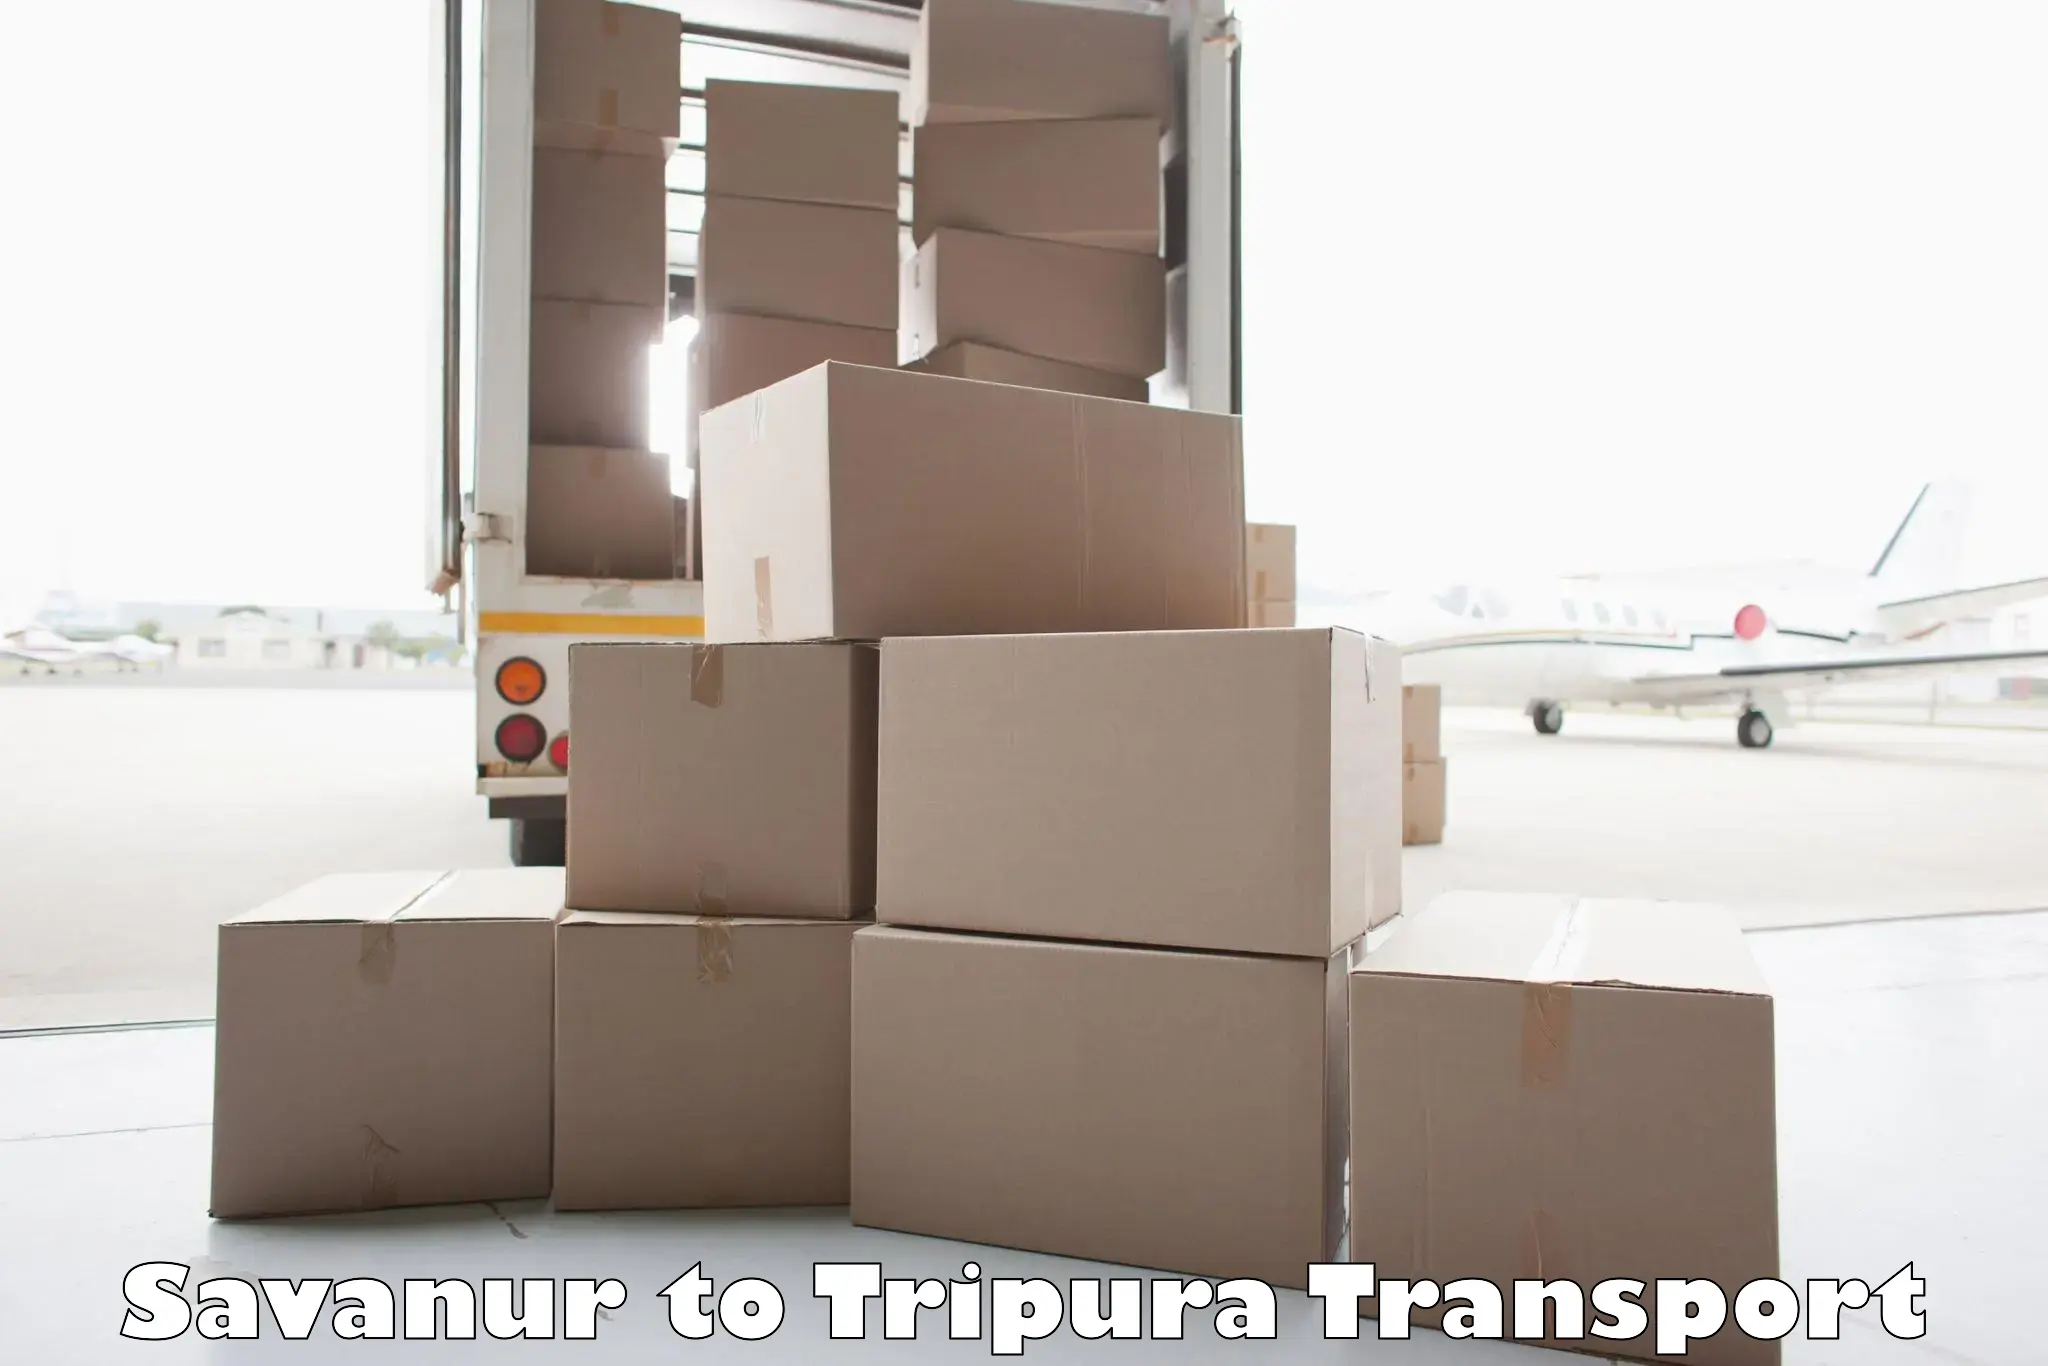 Transport in sharing Savanur to Tripura